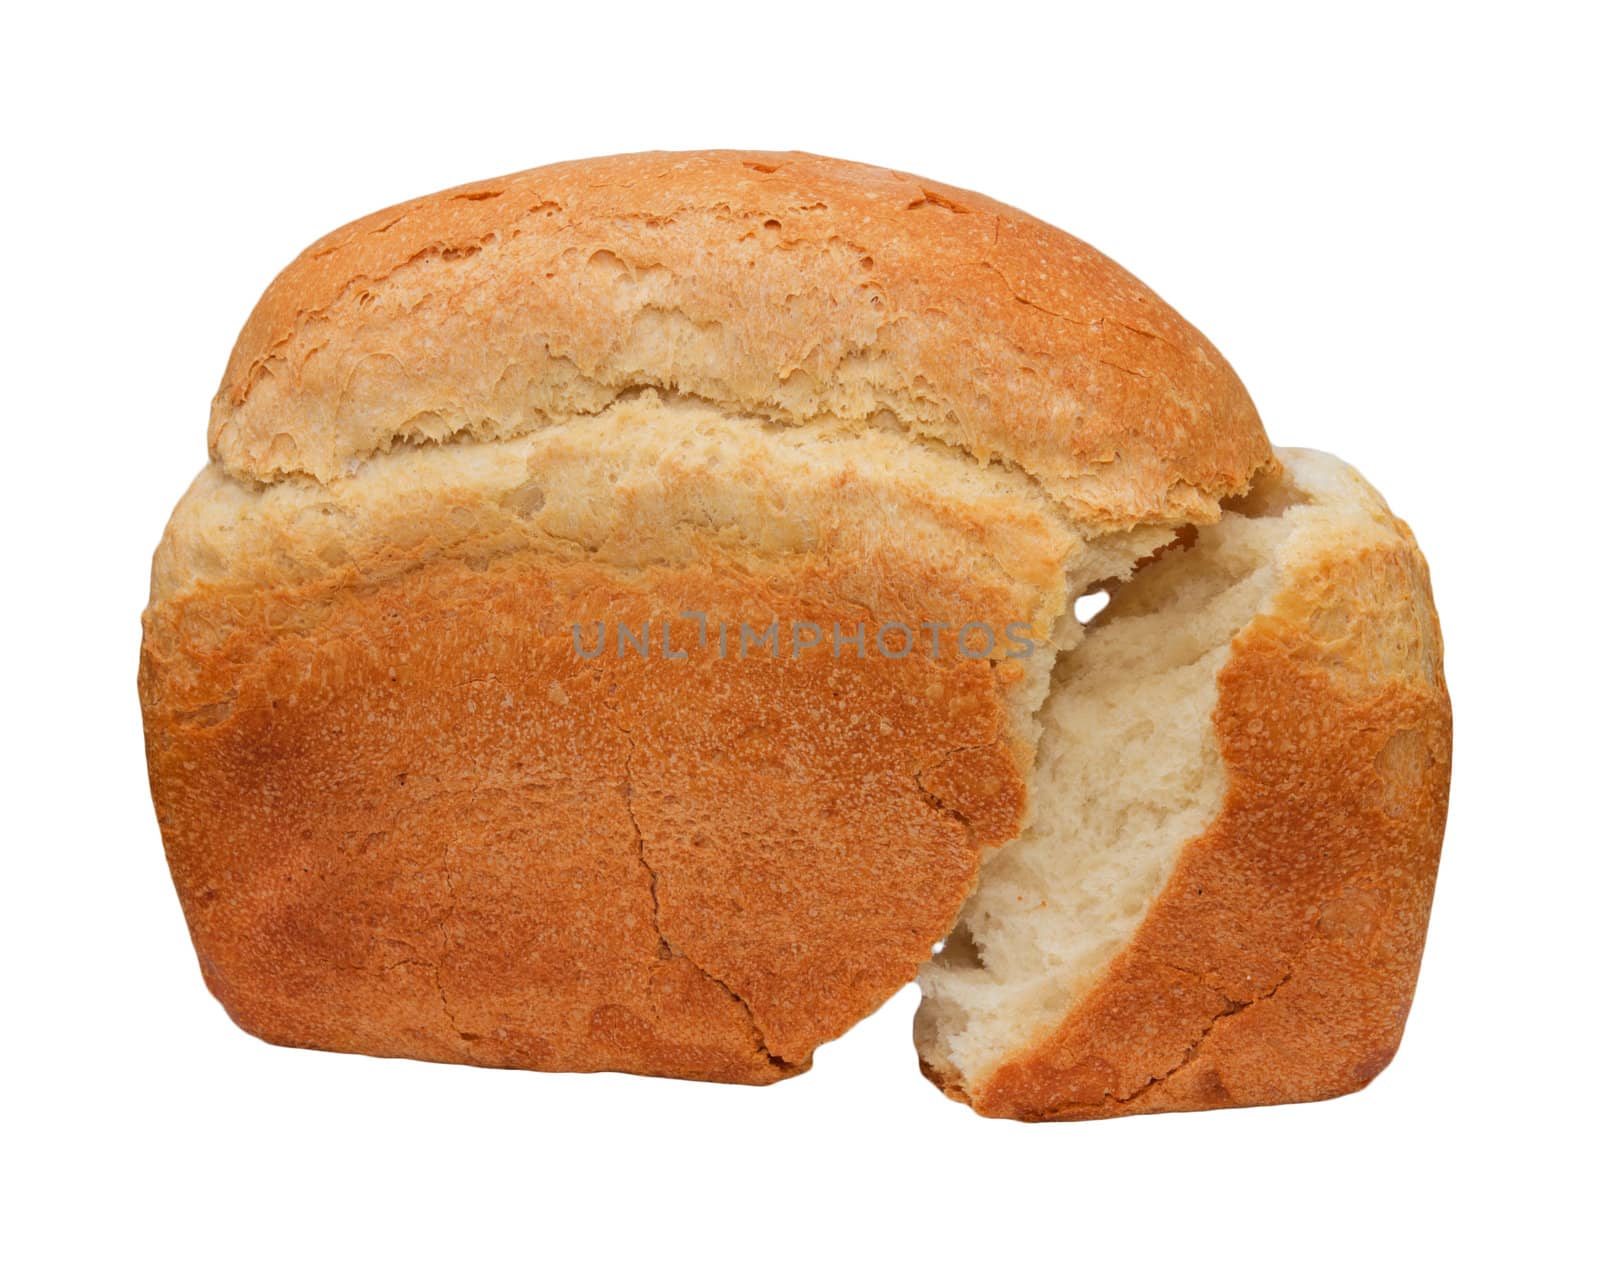 bread on a white background by schankz